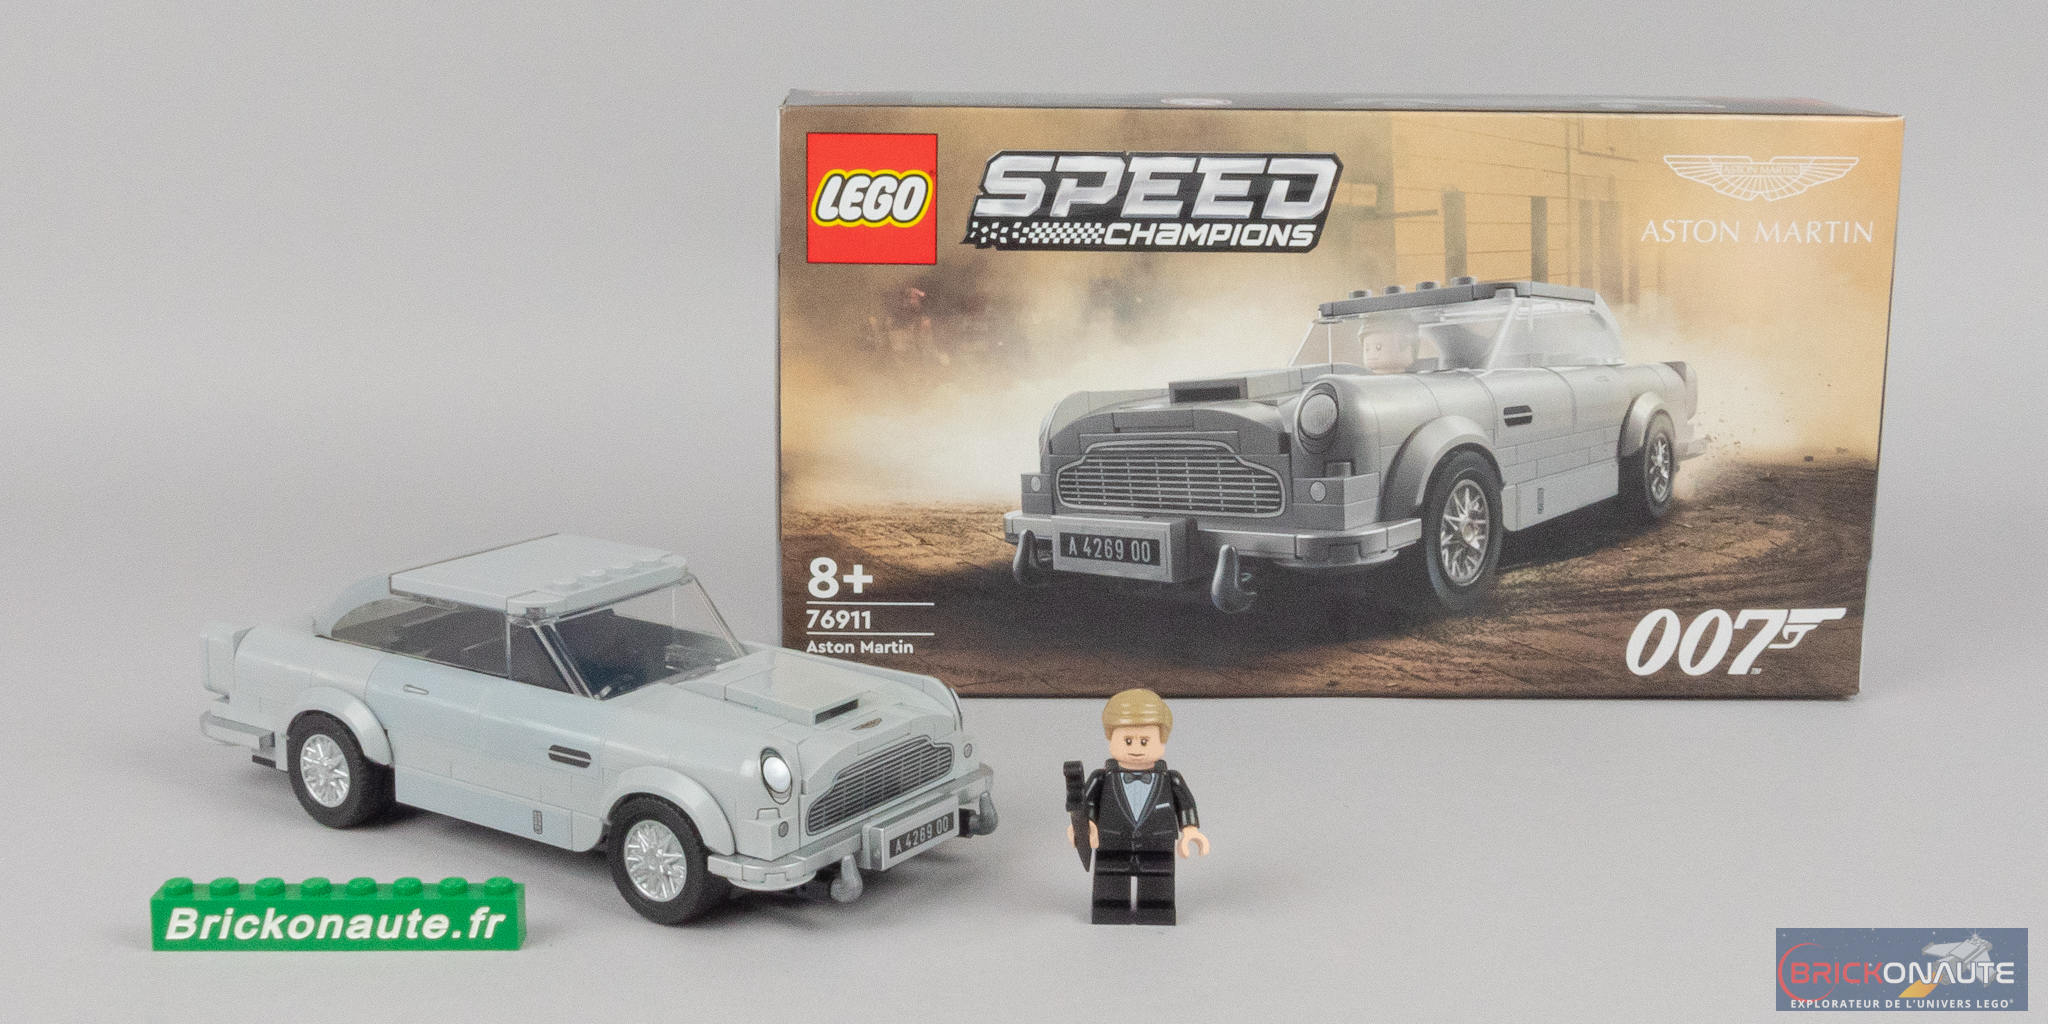 007 Aston Martin DB5 - Lego - 76911 - Jeux de construction